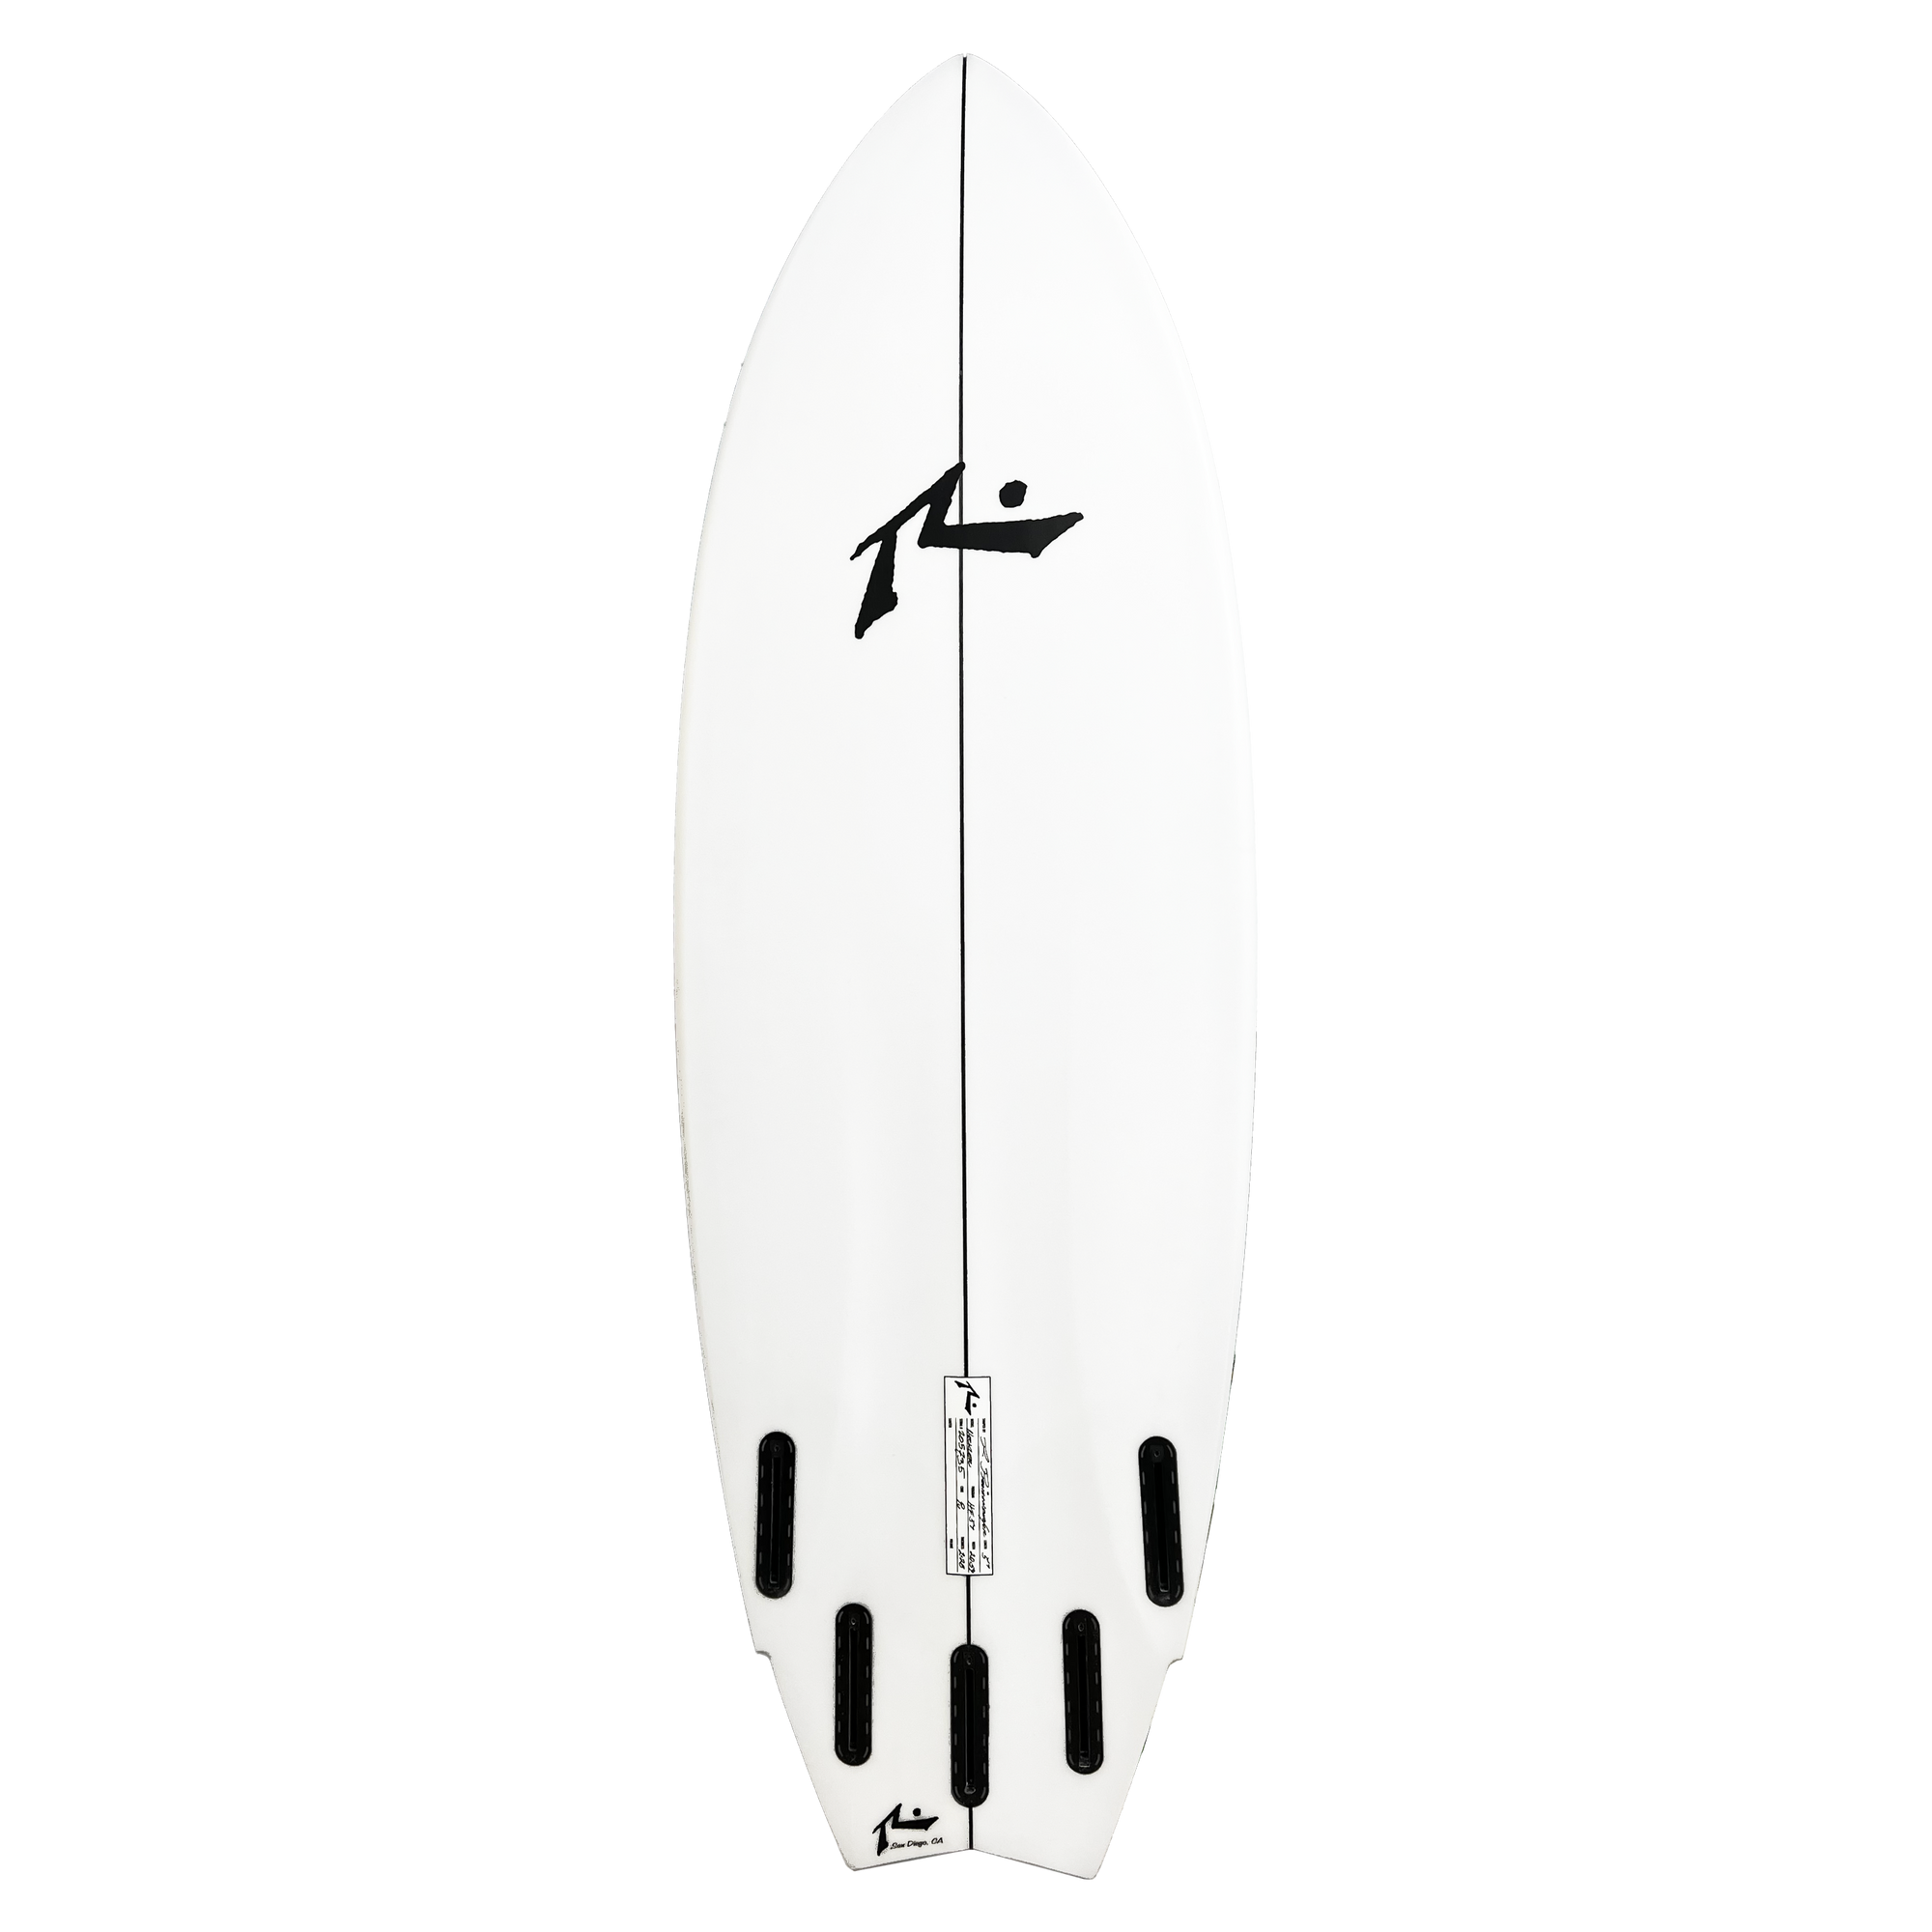 Heckler - Deck View - Rusty Surfboards